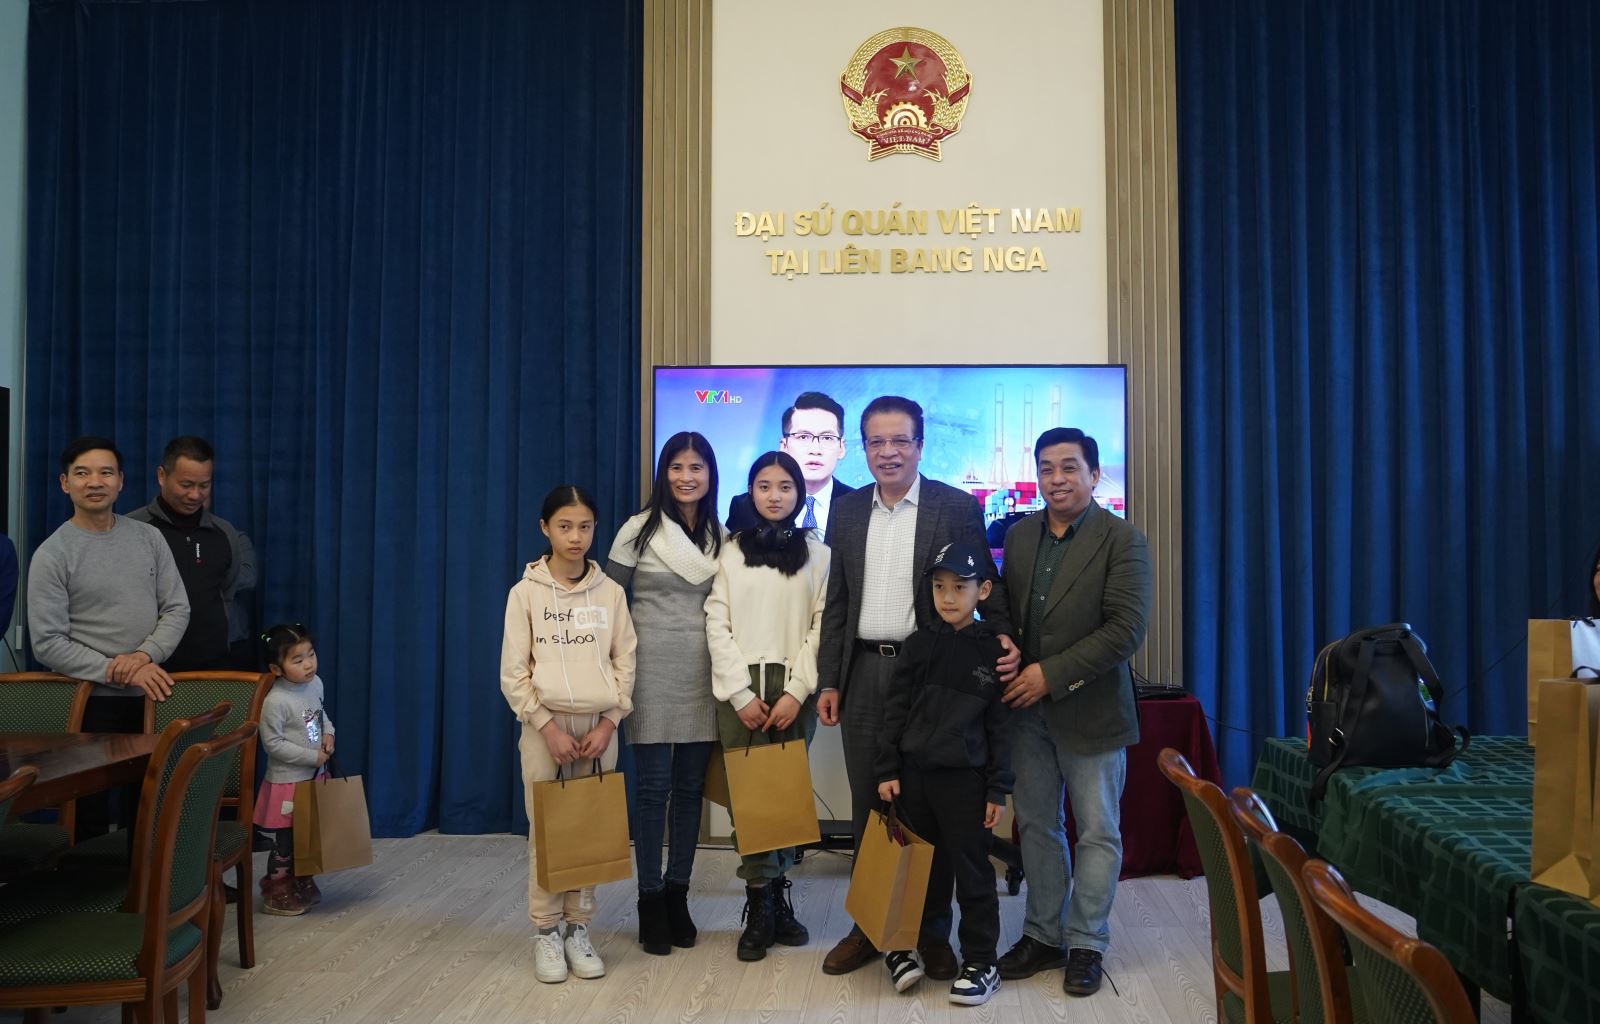 Đại sứ Việt Nam tại LB Nga Đặng Minh Khôi chụp ảnh với gia đình chị Nguyễn Thị Bích Vân và 3 con tản cư từ Kharkov